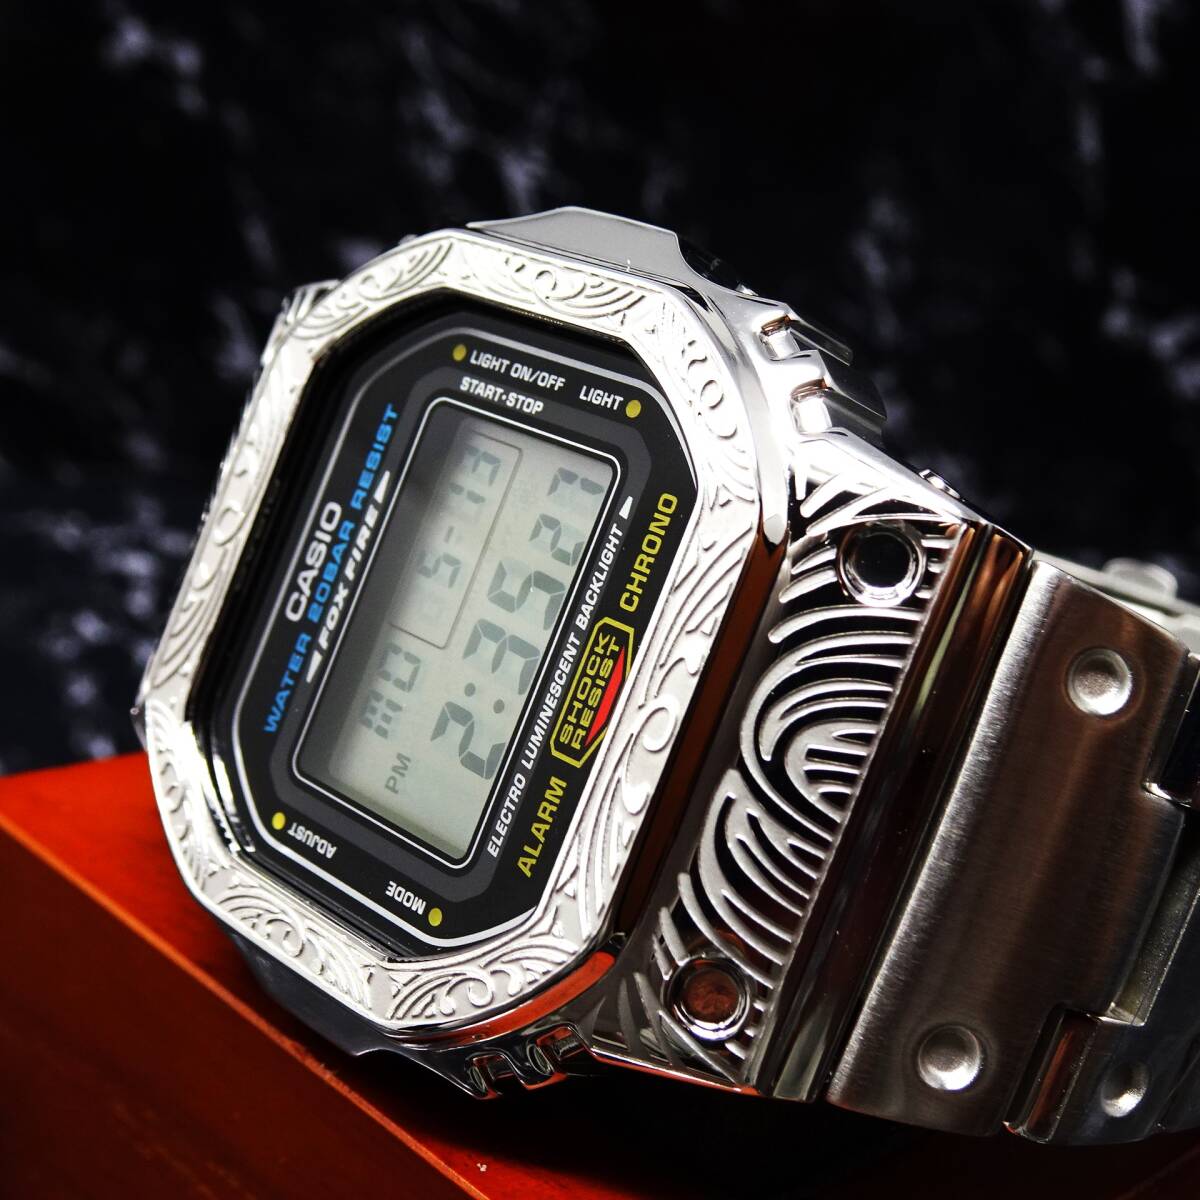 〓送料無料〓新品〓Gショックカスタム本体付きDW5600デジタル腕時計ステンレス製ベネチアン柄エンボス加工ベゼル・フルメタルモデル_画像2